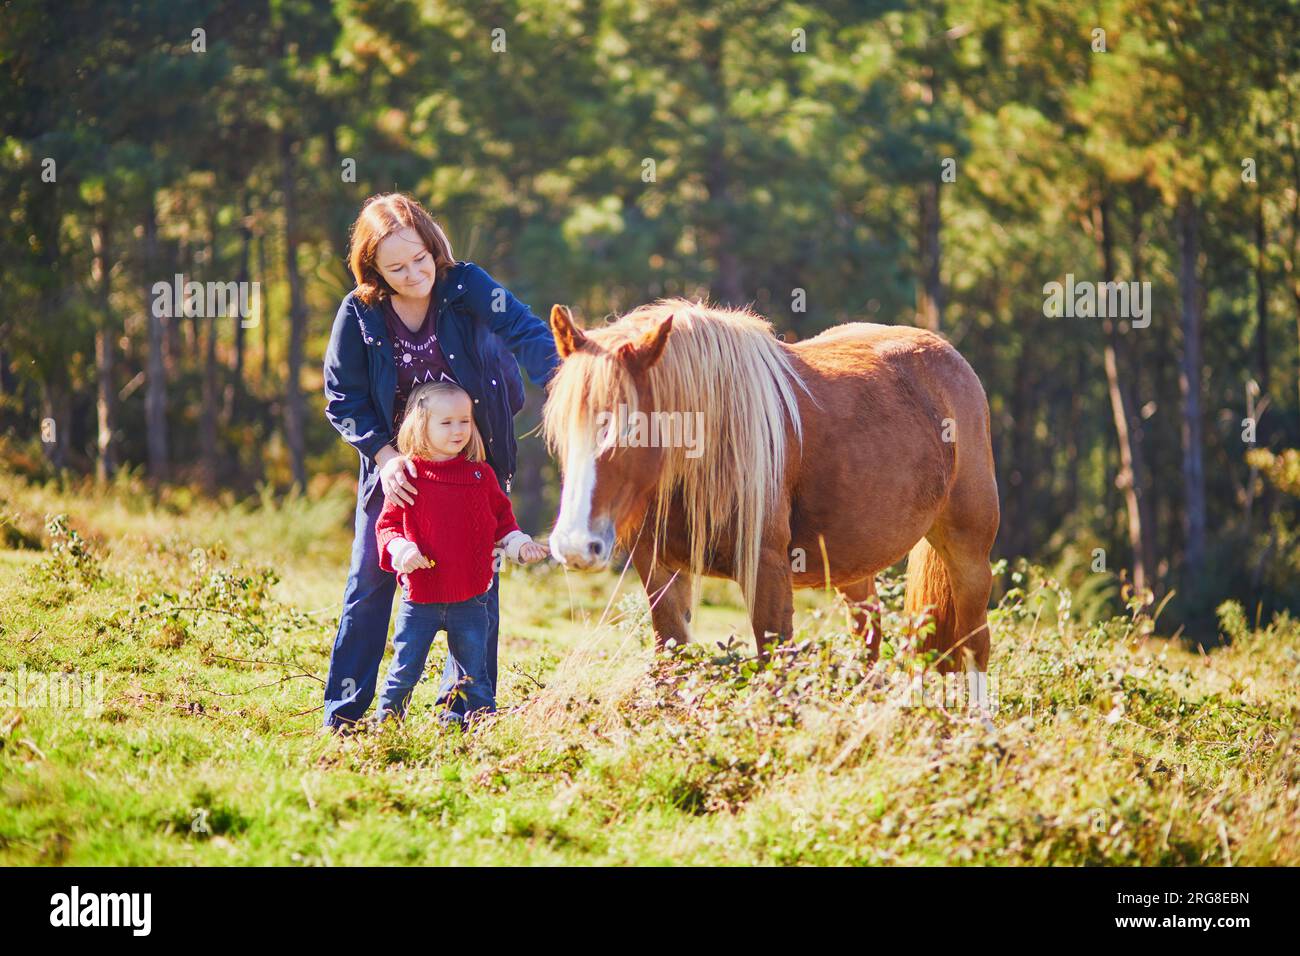 Jeune femme et fille de 3 ans caressant un cheval sur le pâturage. Mère et fille explorant la nature. Activités de plein air pour les enfants Banque D'Images